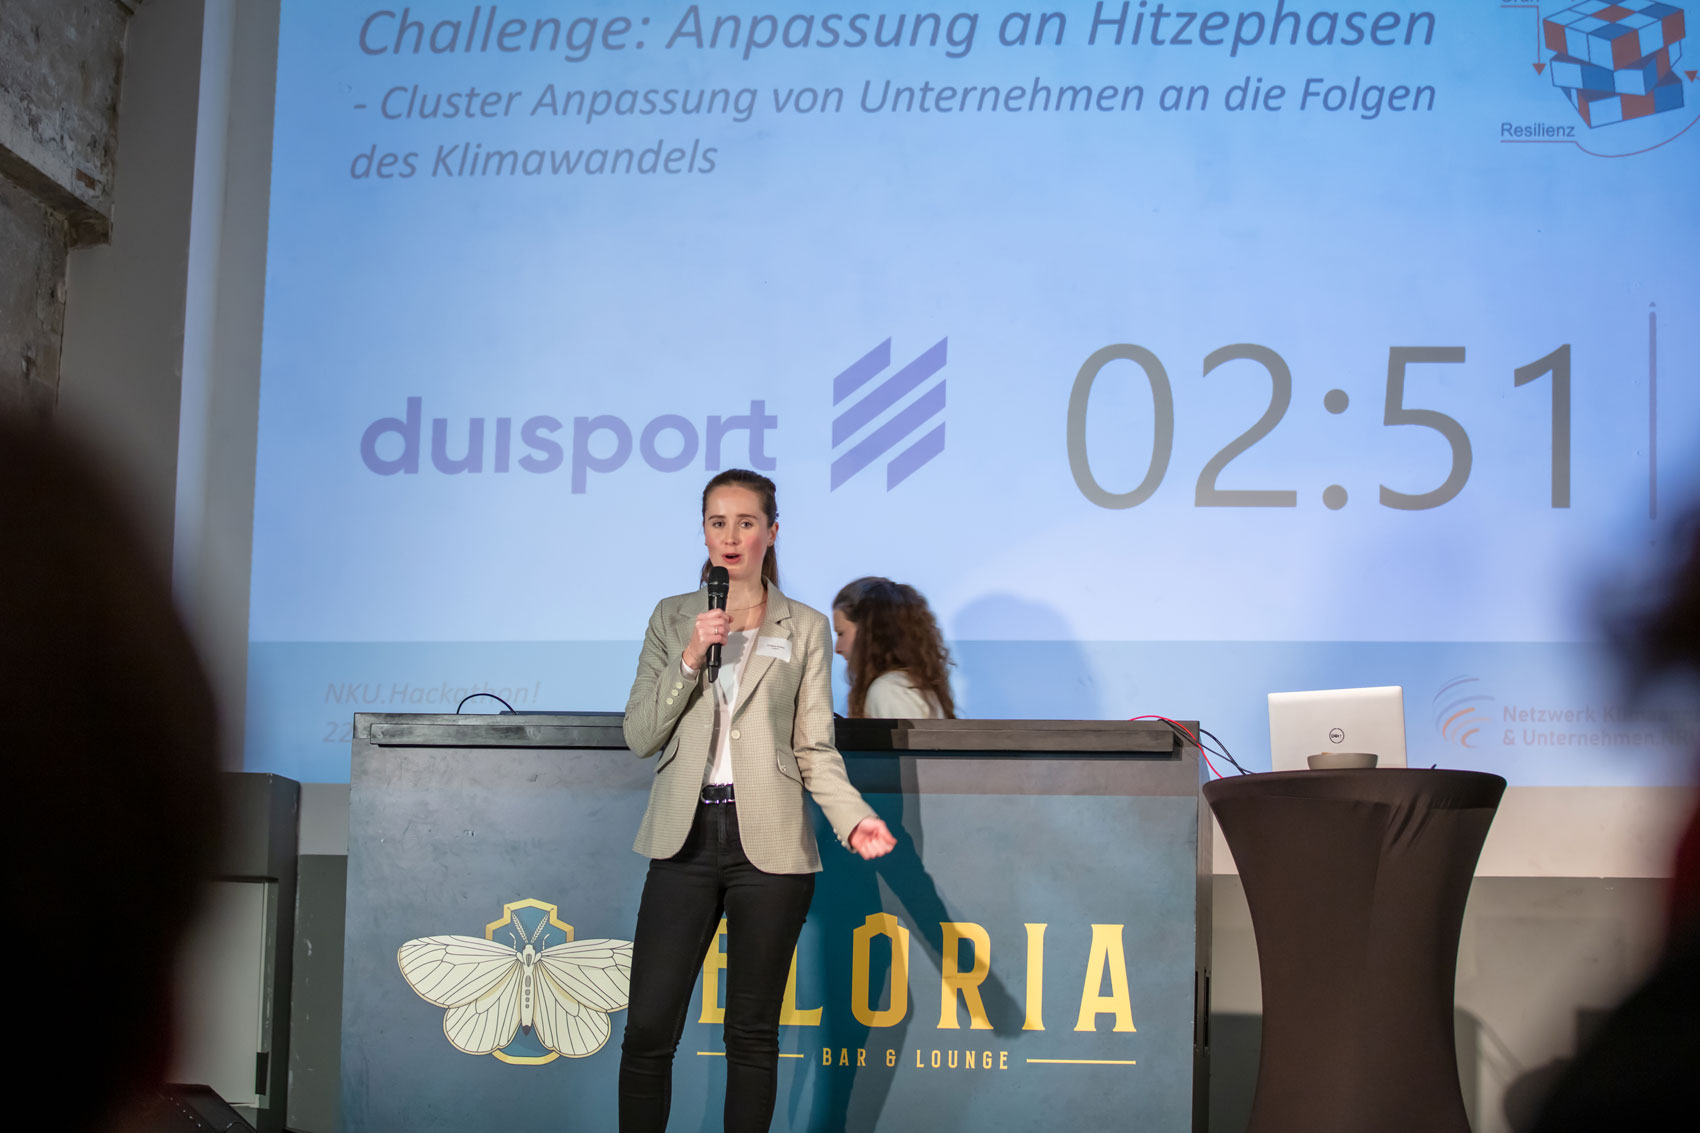 NKU. Hackathon 2.0! - Preisverleihung 2023 in Bottrop